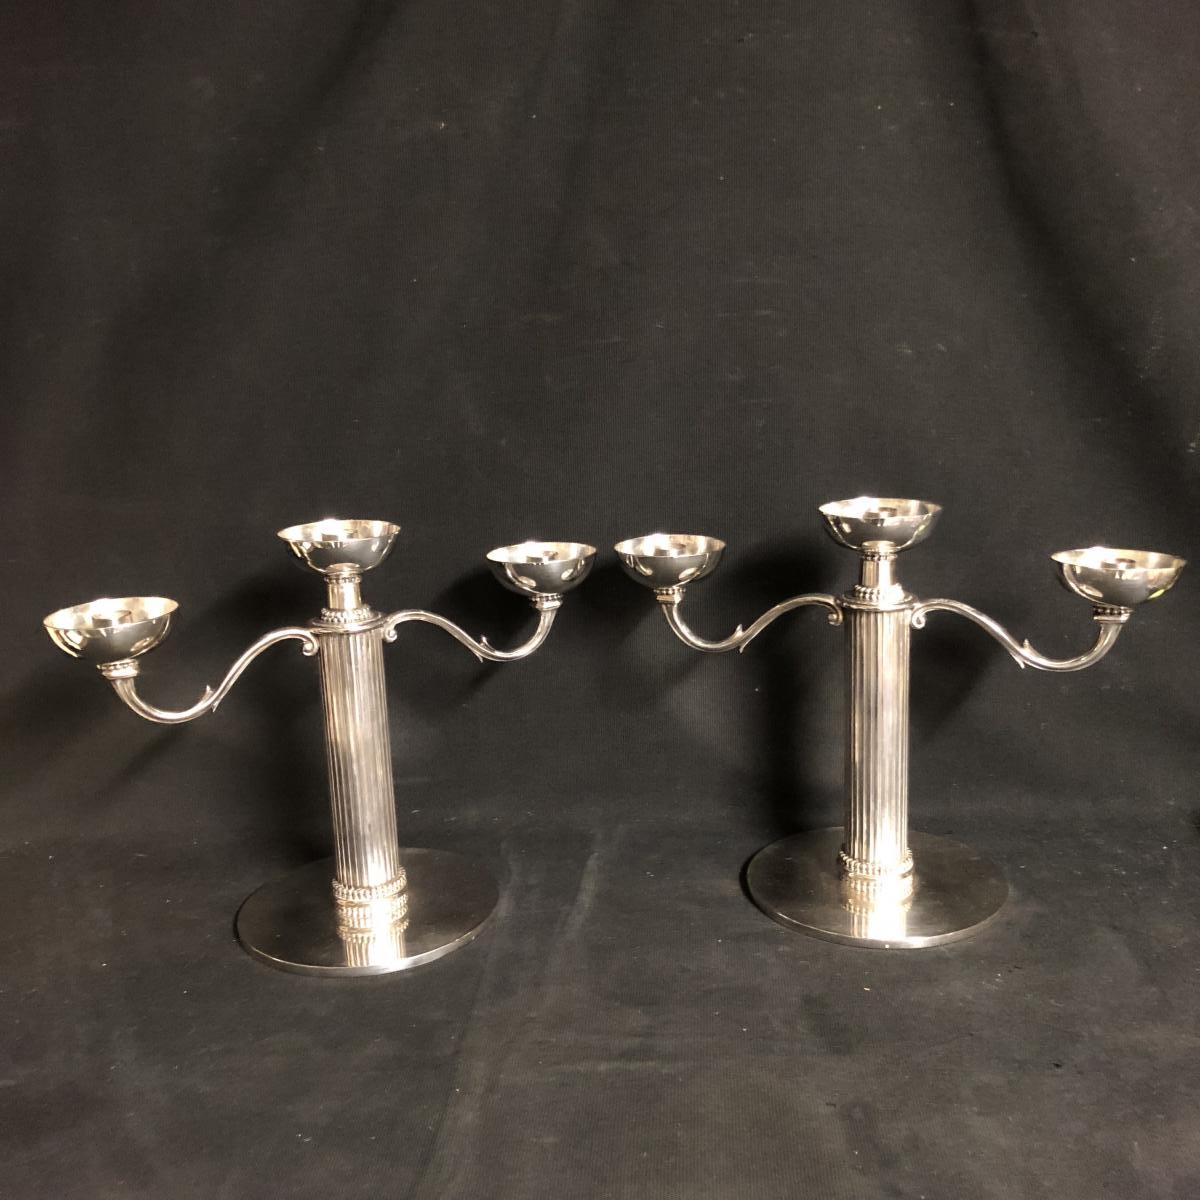 Jean DESPRES 1889-1980 Importante paire de candélabres en métal argenté signés després-photo-2